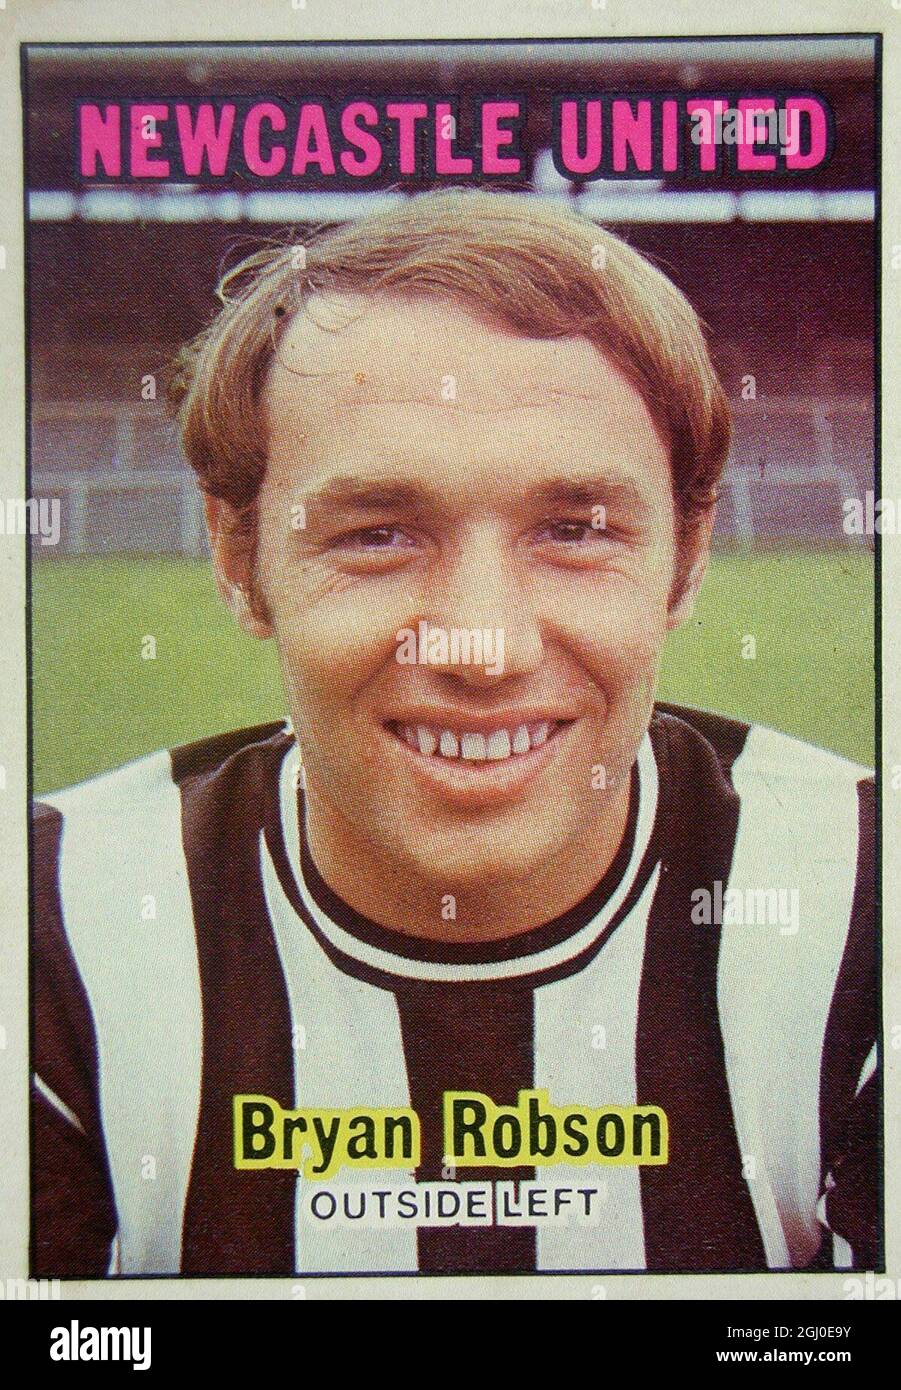 Bryan Robson - Newcastle United Robson, Ein erfolgreicher Torschütze in den letzten Saisons, sorgte 1969 für Schlagzeilen, als seine Tore eine große Rolle beim Erfolg des Newcastle Fairs Cup spielten. Er wurde von England auf einem Niveau unter 23 Jahren gekappt und drängte auf volle Anerkennung. Bei seinem Debüt in der Liga 1964 erzielte er ein Tor, nachdem er zwei Jahre zuvor Profi geworden war. Stockfoto